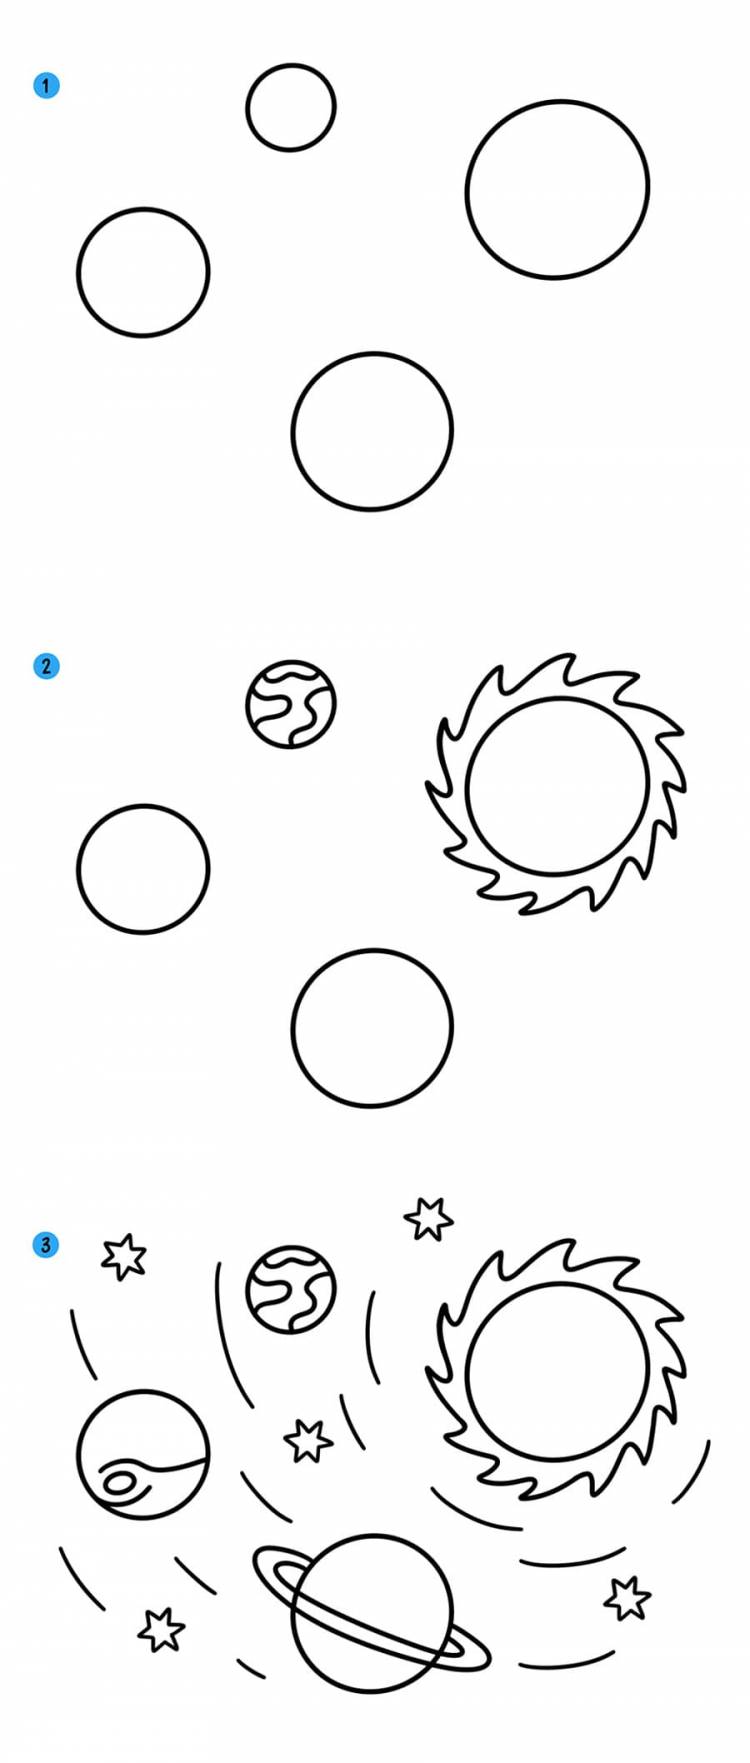 Как нарисовать космос и планеты поэтапно видео уроки рисования для детей и начинающих » Рисуем космос и звезды карандашом, акварелью и гуашью